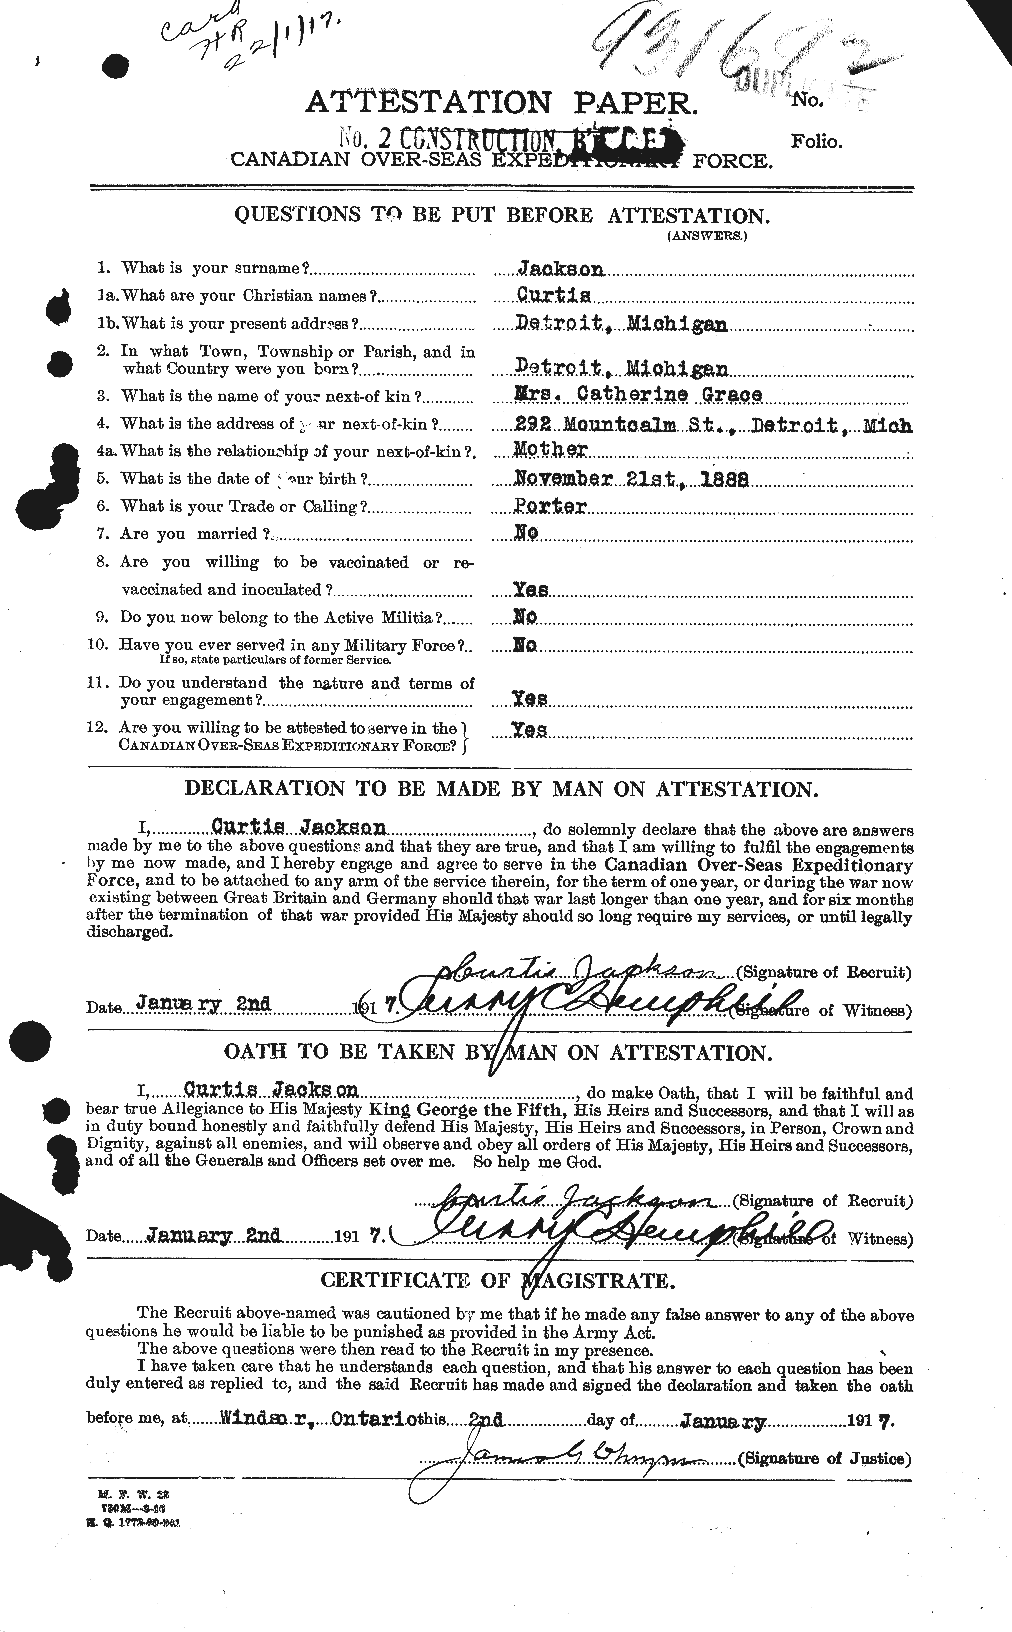 Dossiers du Personnel de la Première Guerre mondiale - CEC 411854a